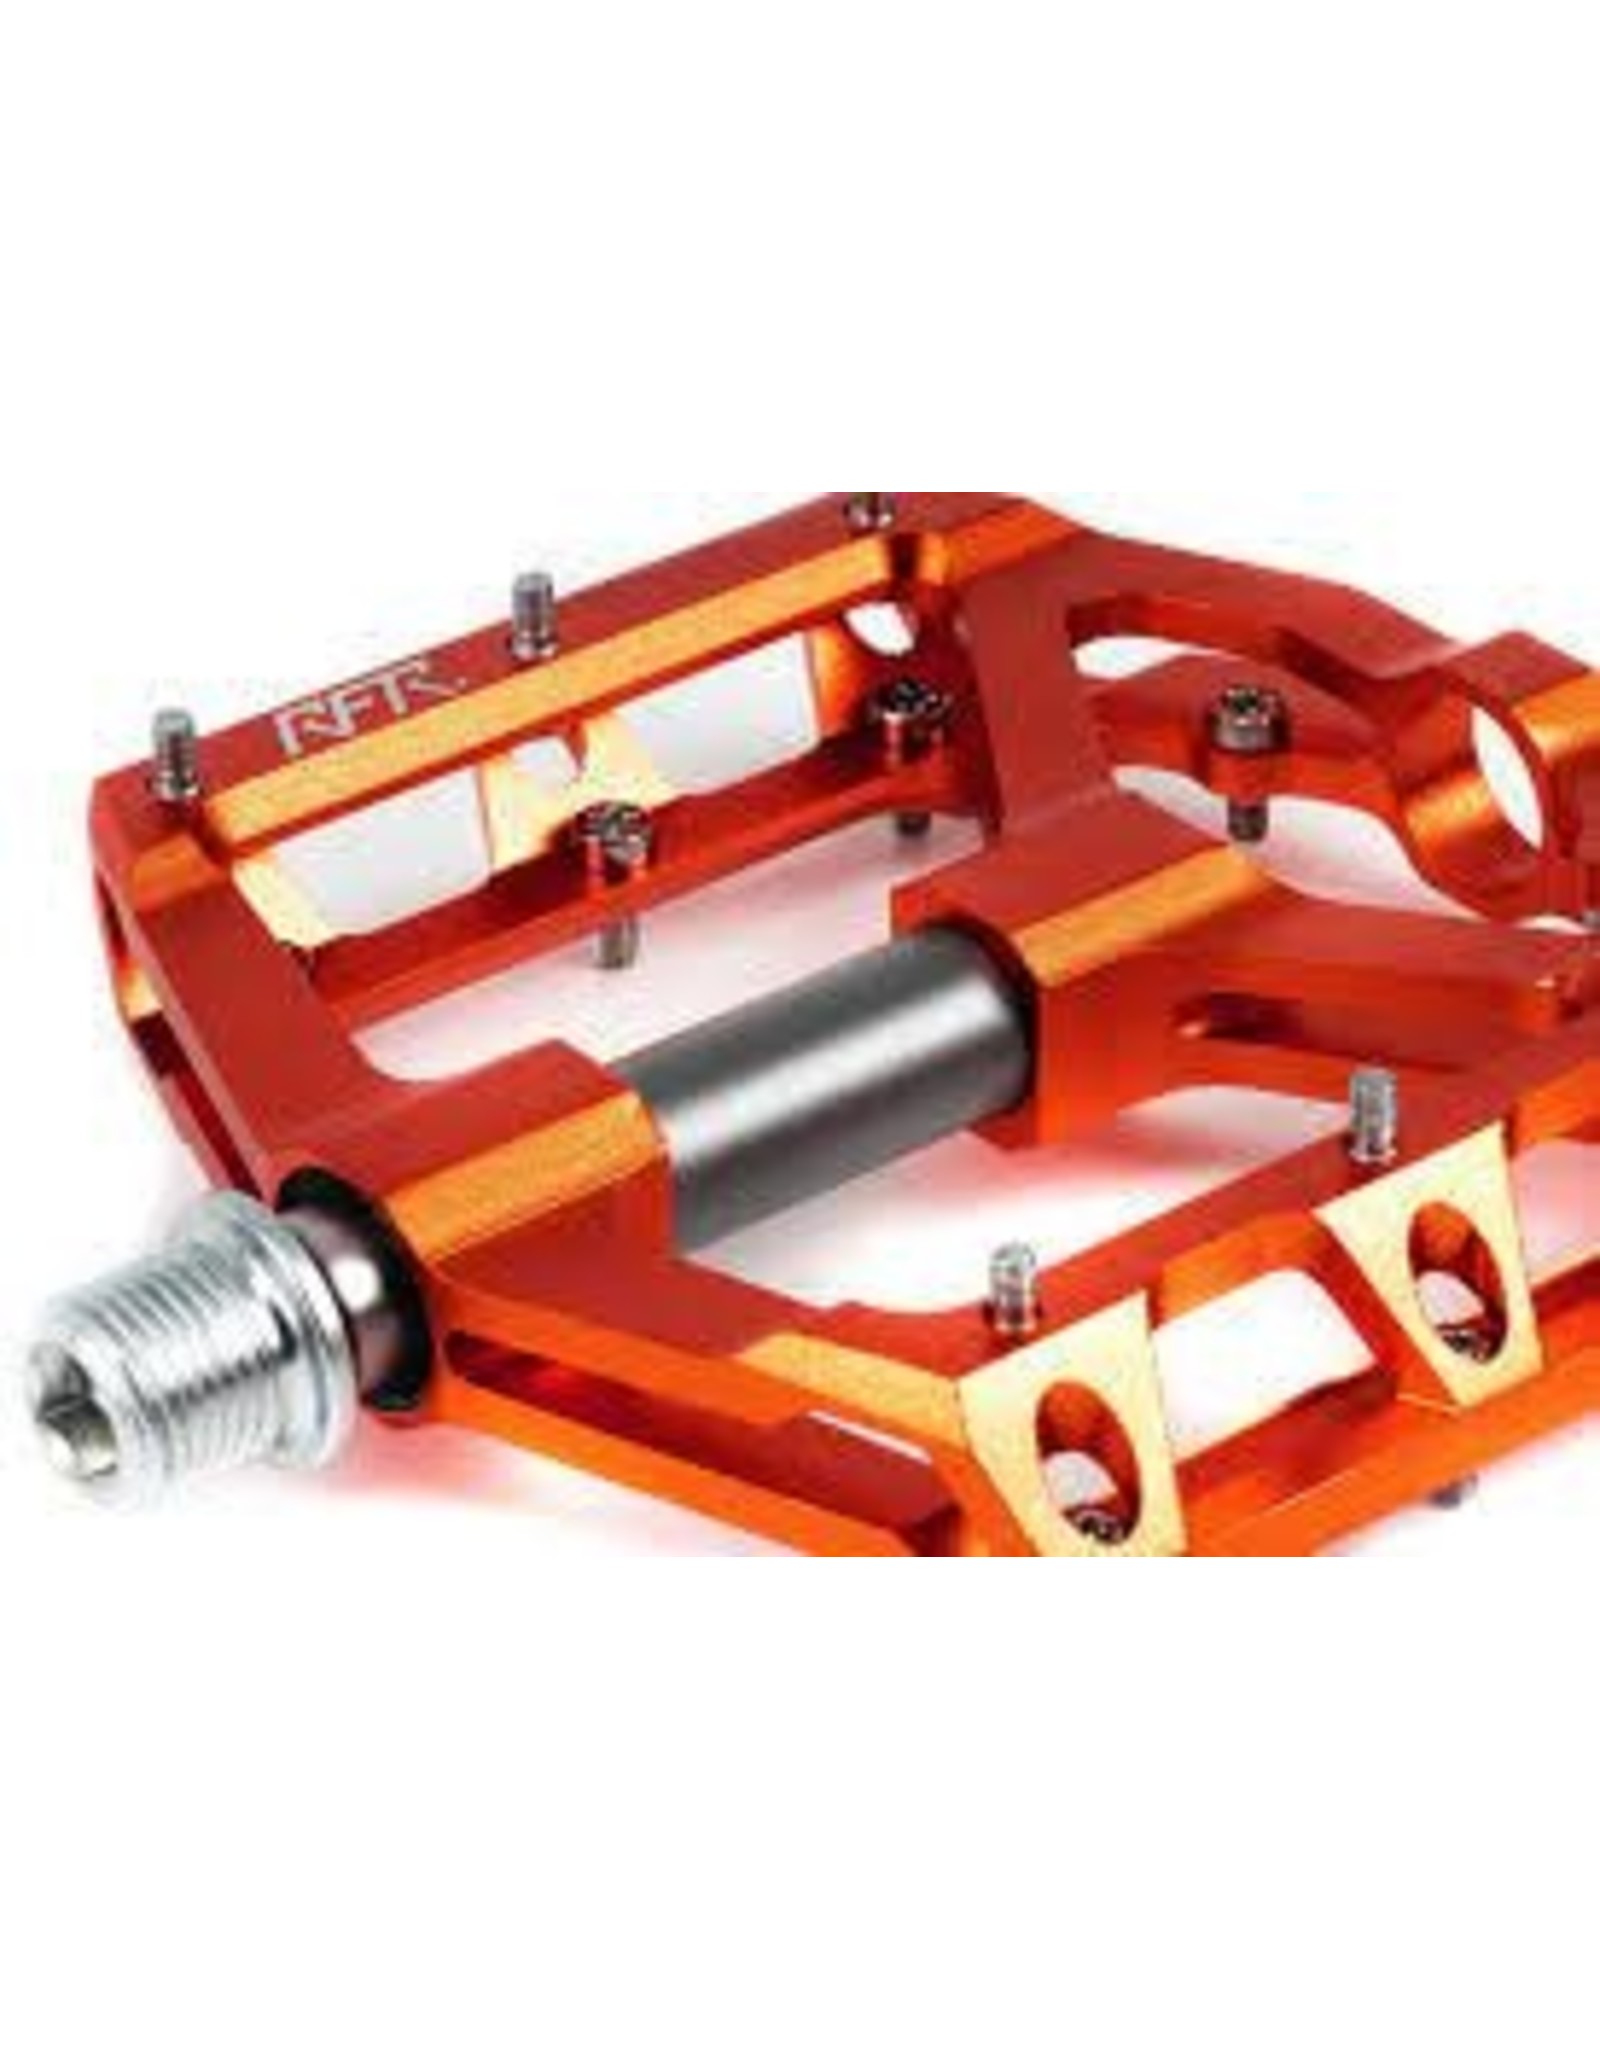 RFR RFR - Flat Pedals SLT 2.0 Orange"N"Grey